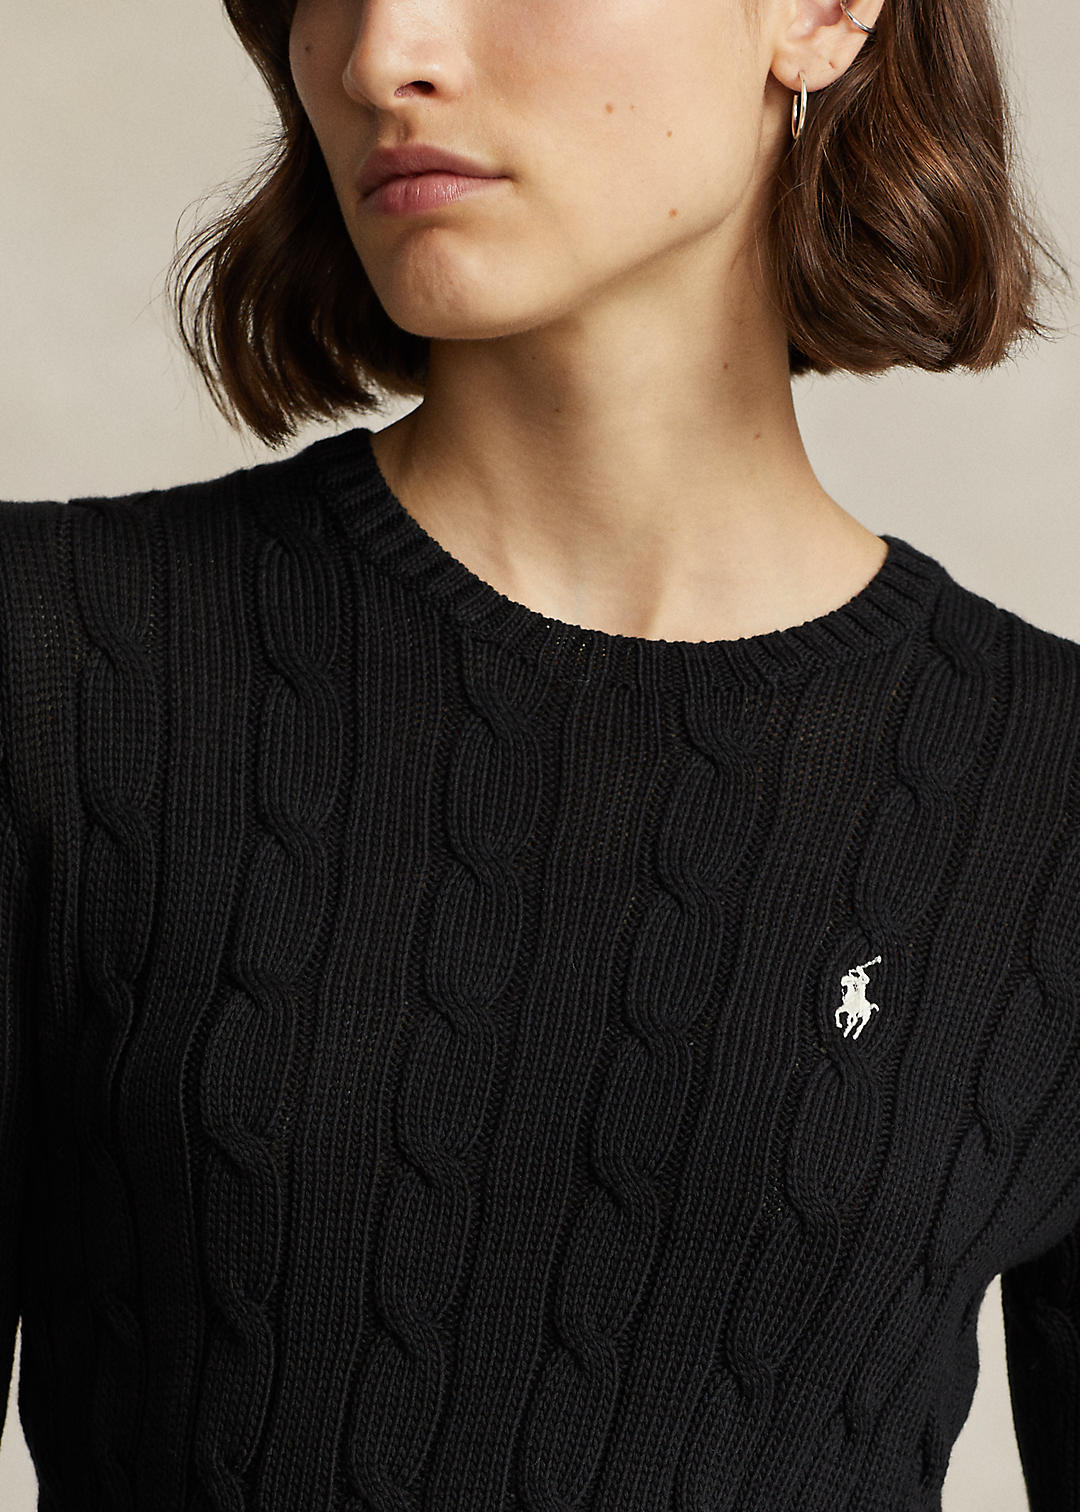 Verbonden De onze Zenuwinzinking Women's Slim Fit Cable-Knit Sweater | Ralph Lauren